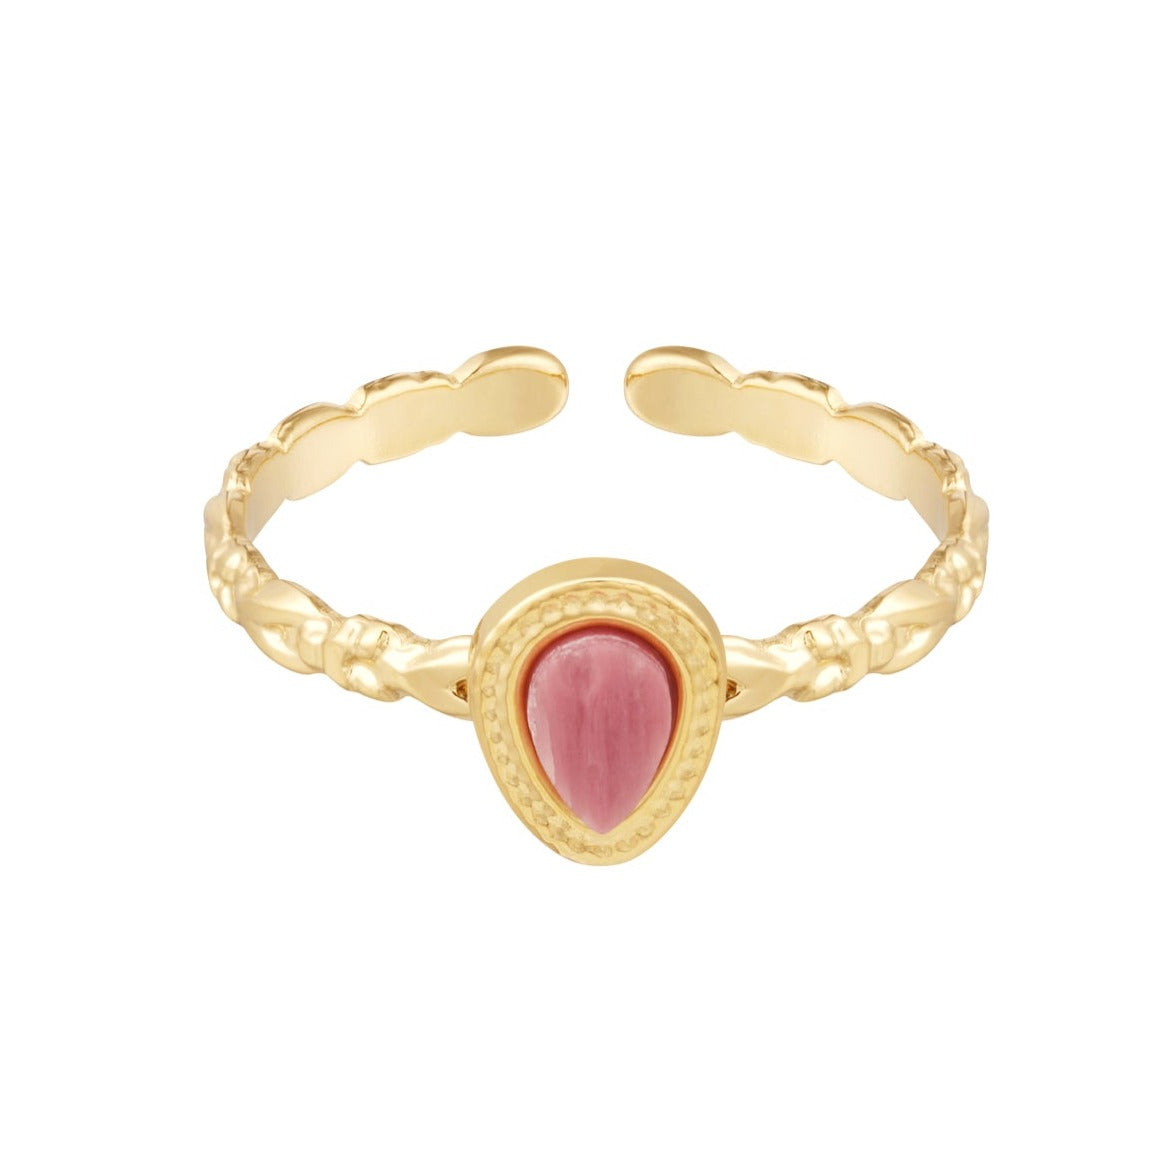 Artemis ring - Roze agaat ring goud